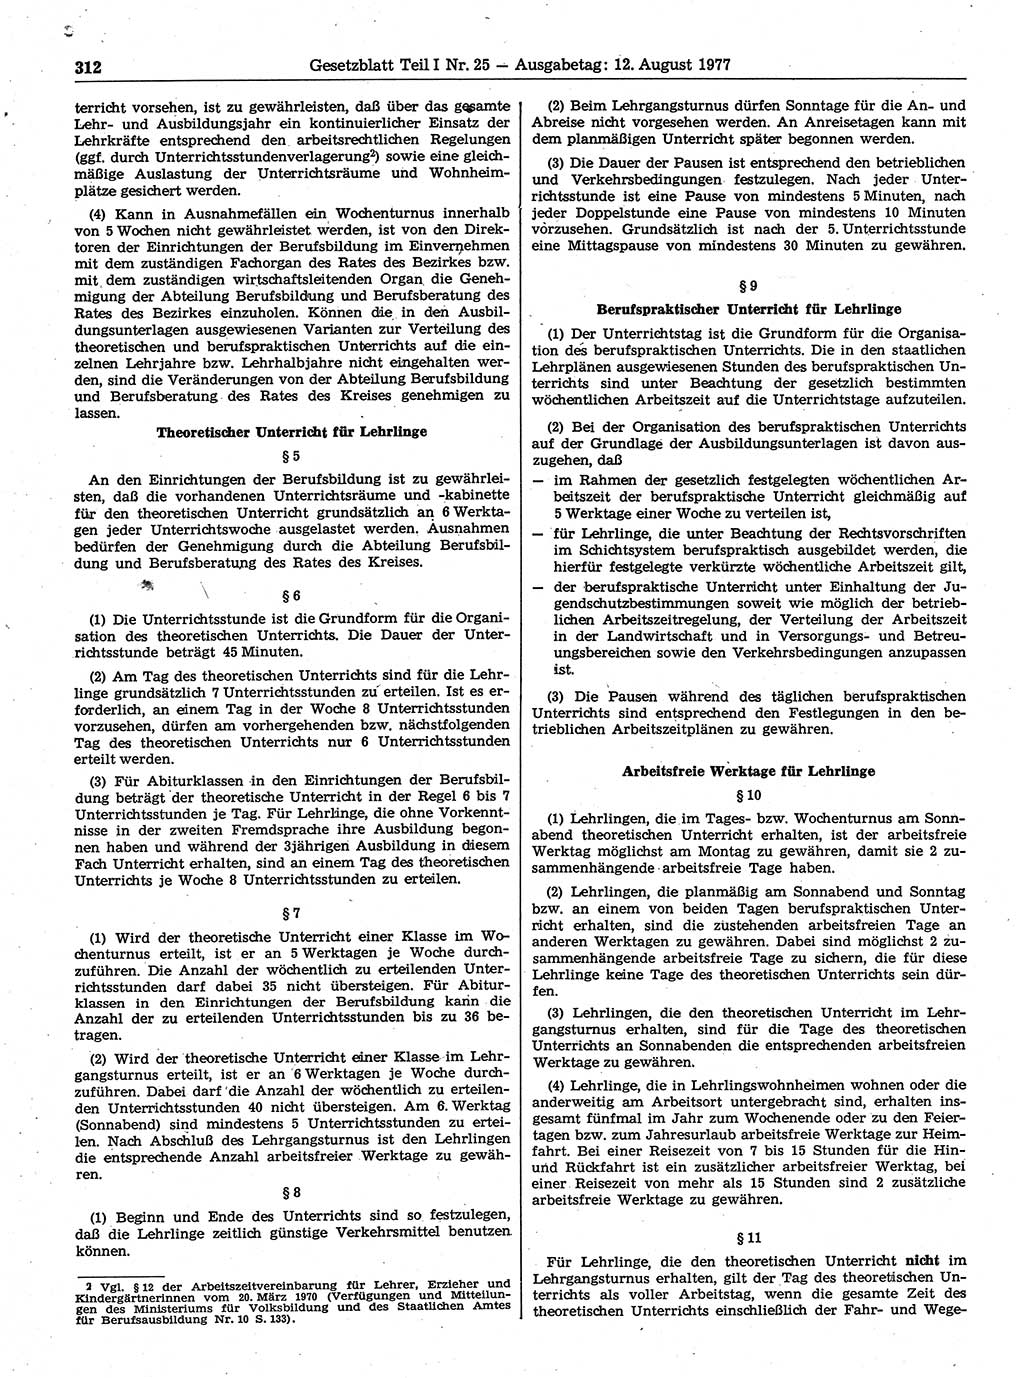 Gesetzblatt (GBl.) der Deutschen Demokratischen Republik (DDR) Teil Ⅰ 1977, Seite 312 (GBl. DDR Ⅰ 1977, S. 312)